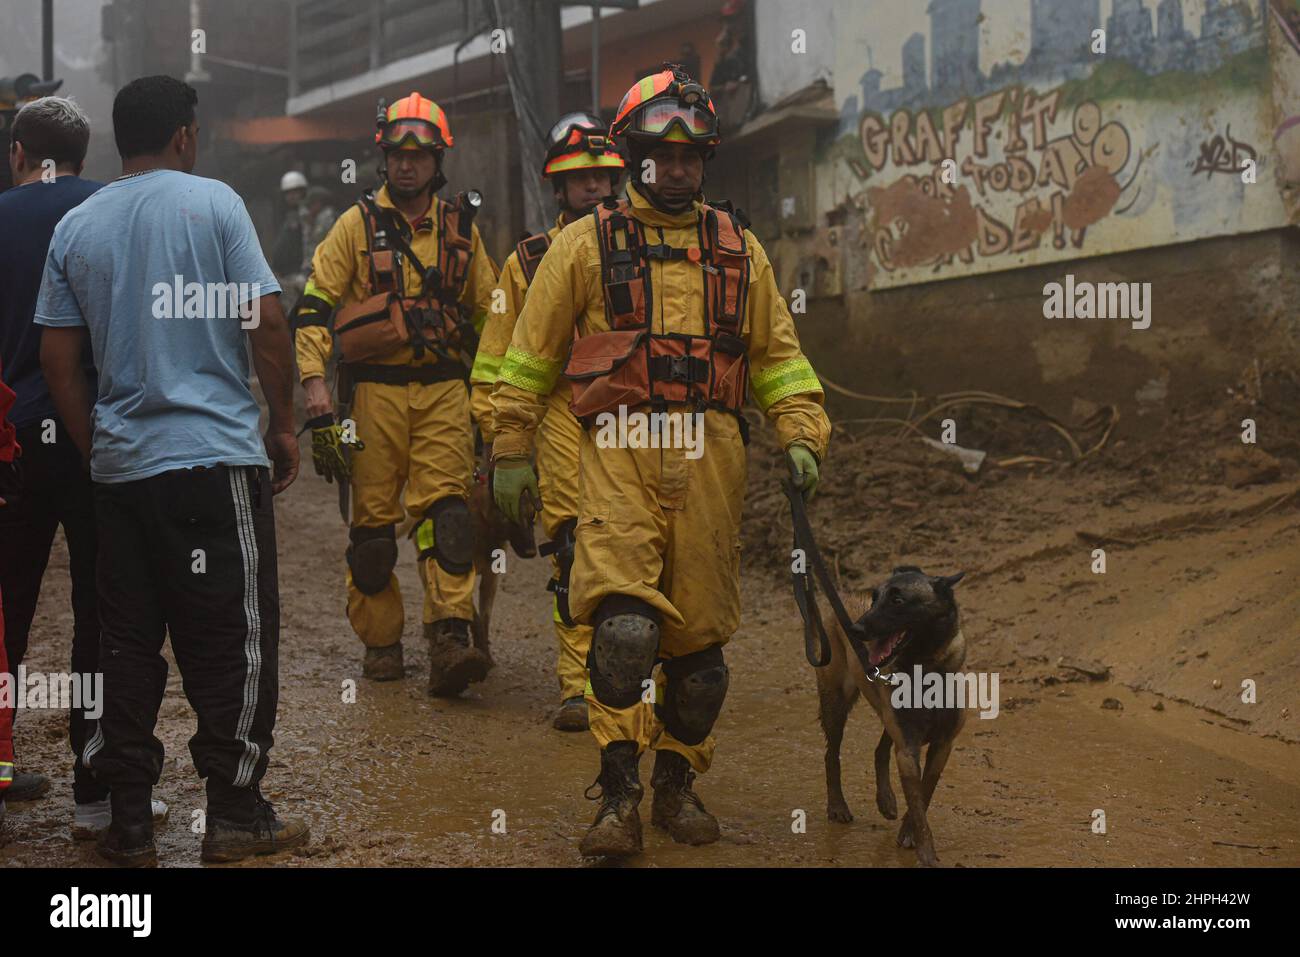 Rio de Janeiro, Rio de Janeiro, Brasil. 24th Apr, 2021. (INT) Fire